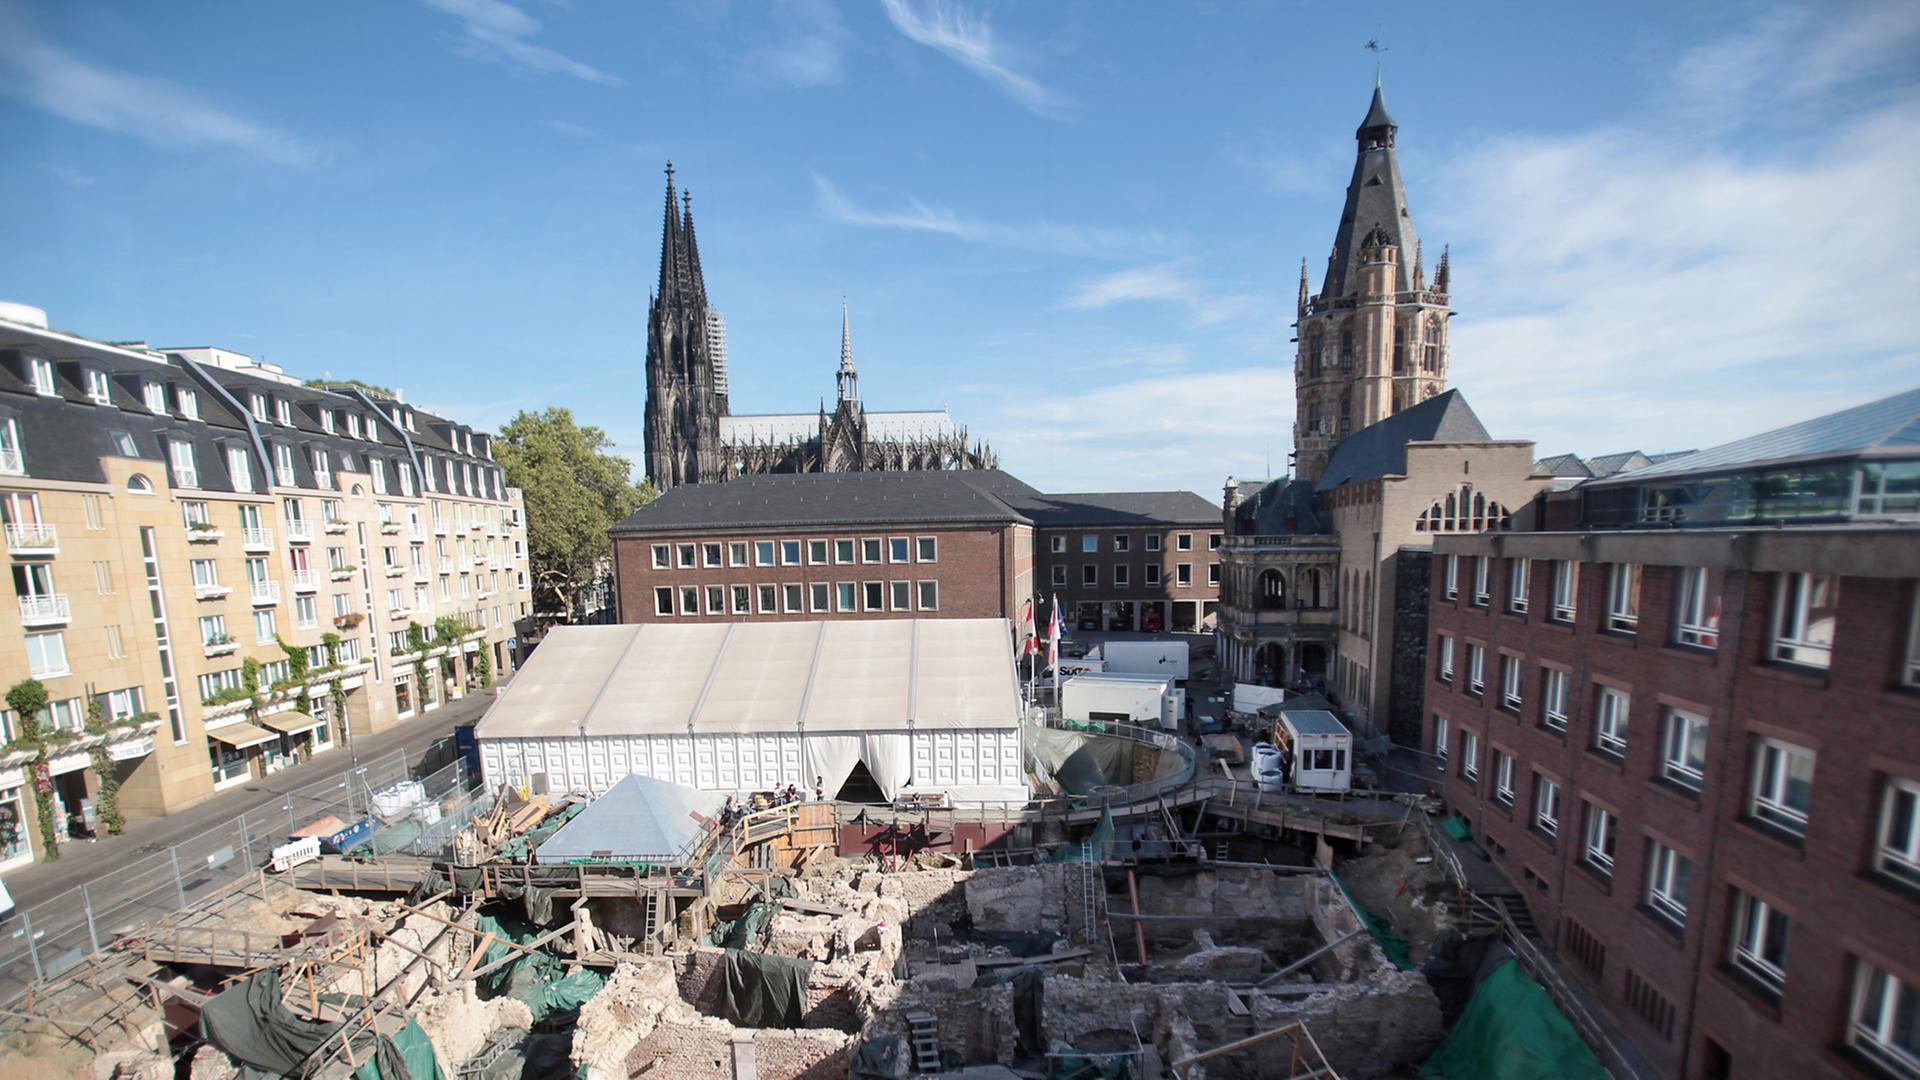 Archäologen haben auf dem Rathausplatz in der Kölner Innenstadt die Ruinen der mittelalterlichen Gebäude freigelegt, darunter Überreste von Synagoge, Kultbad, Hospital, Bäckerei, Tanz- und Hochzeitshaus.